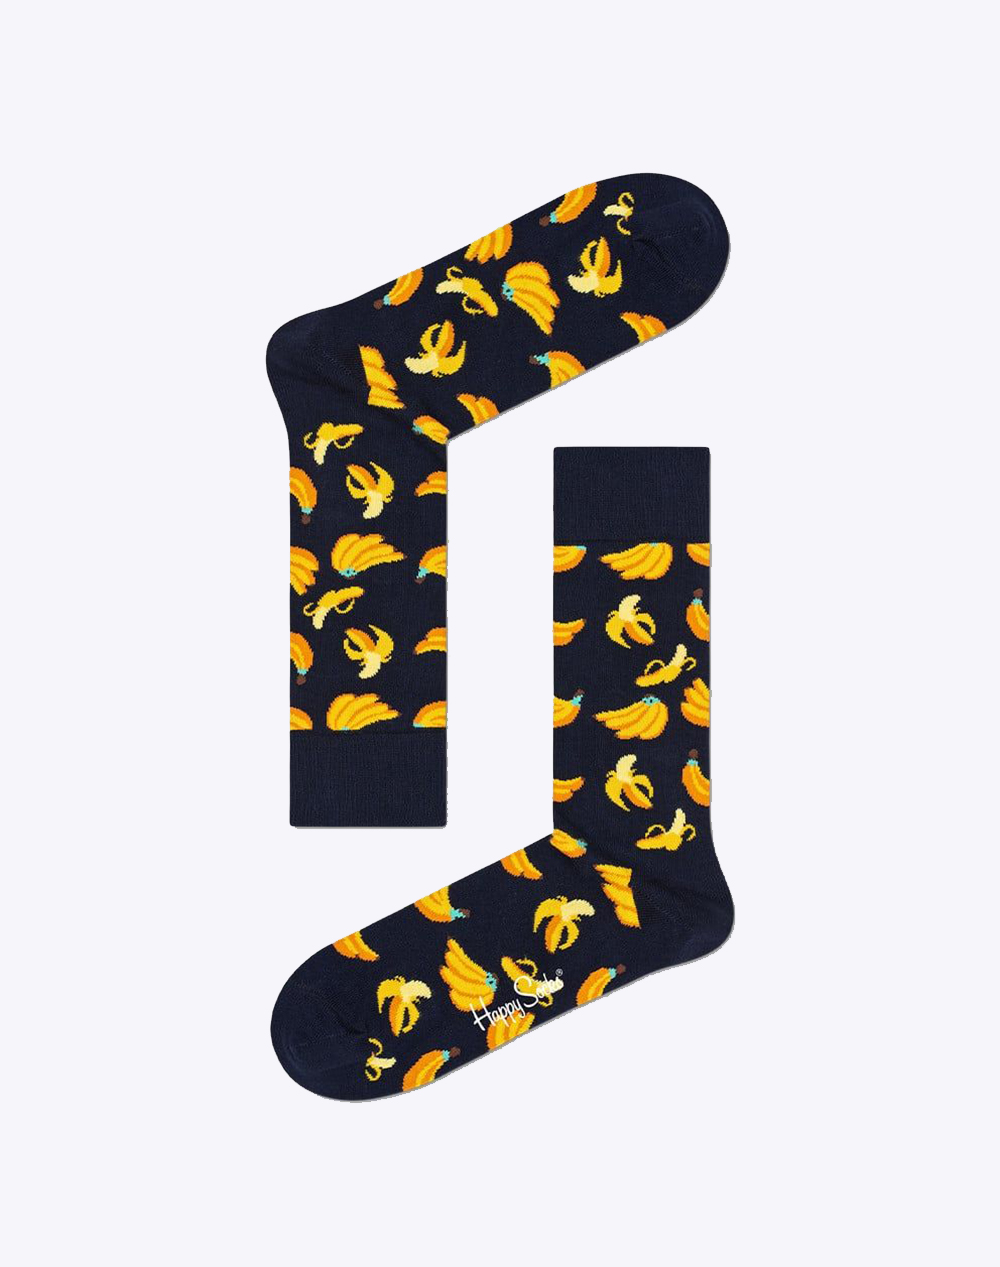 HAPPY SOCKS Banana Sock - Multi